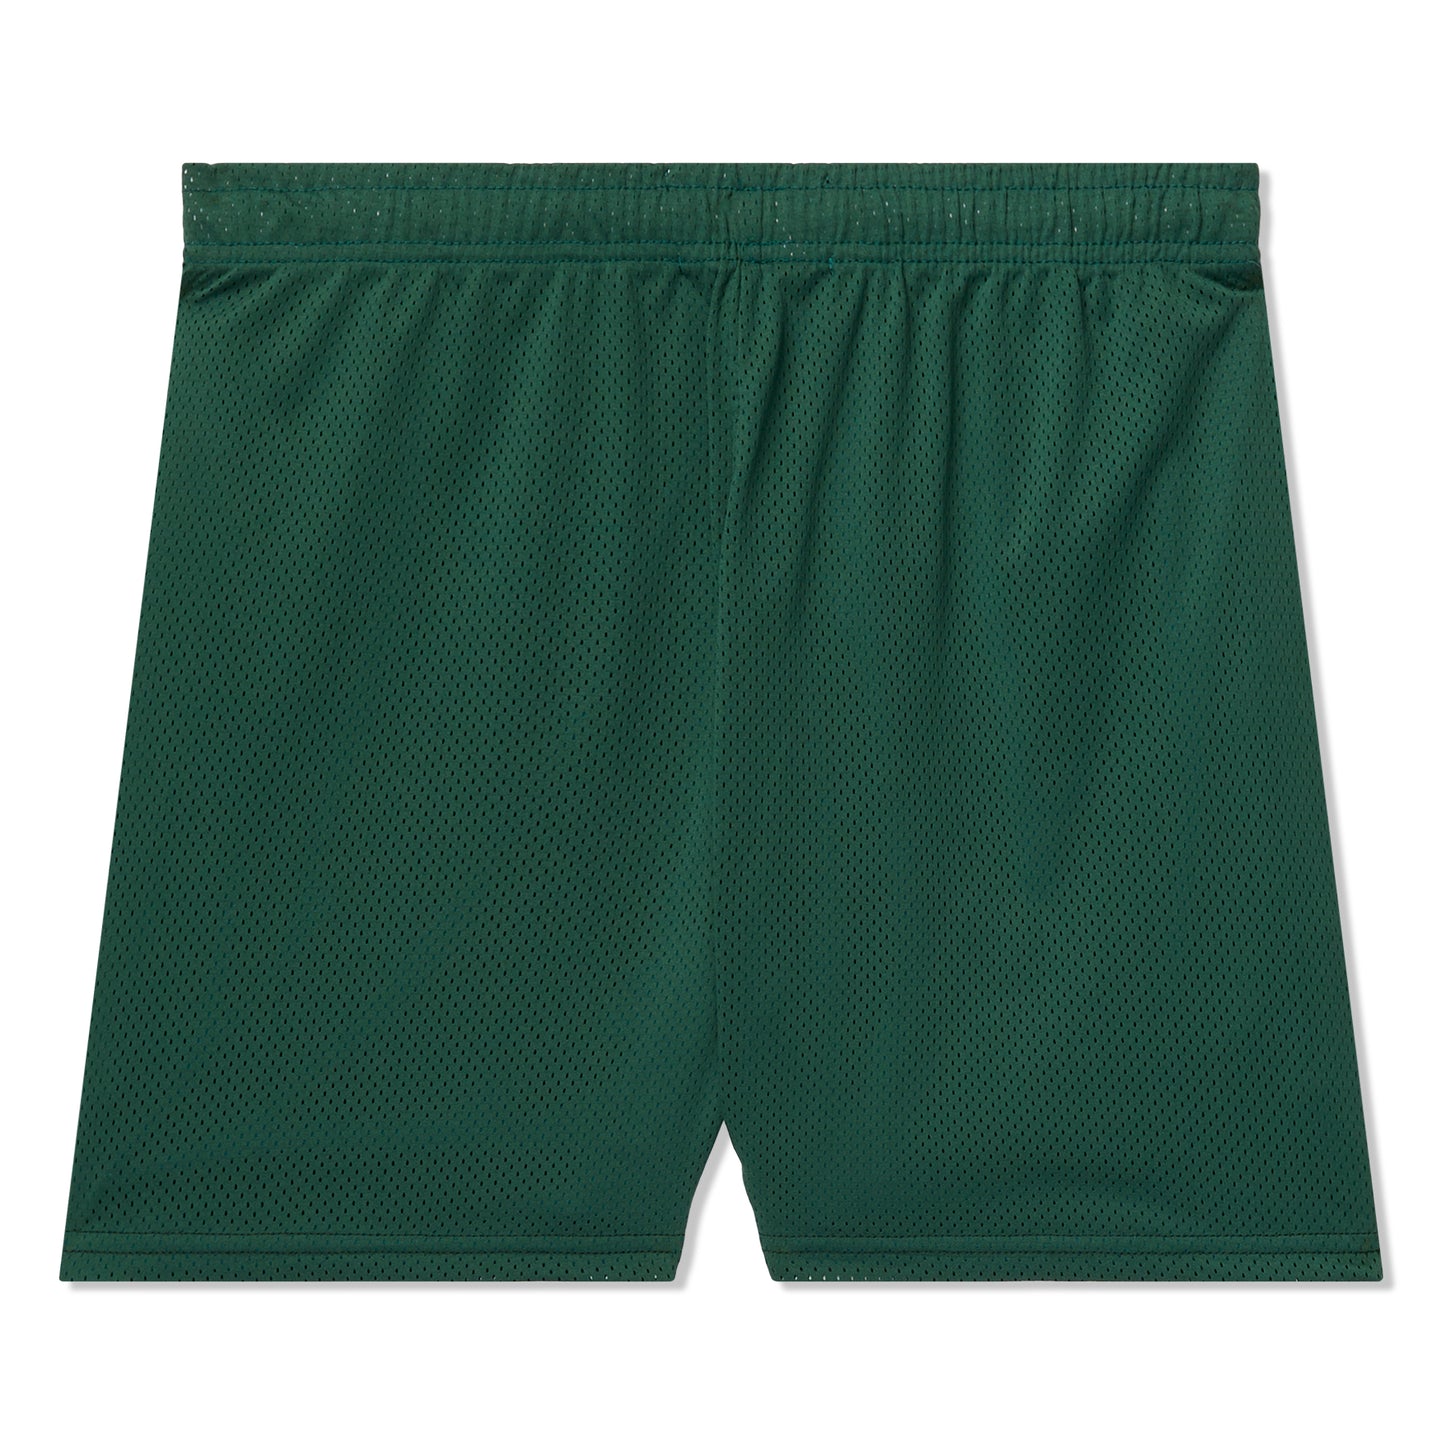 Concepts Pickup Basketball Mesh Short (Green)